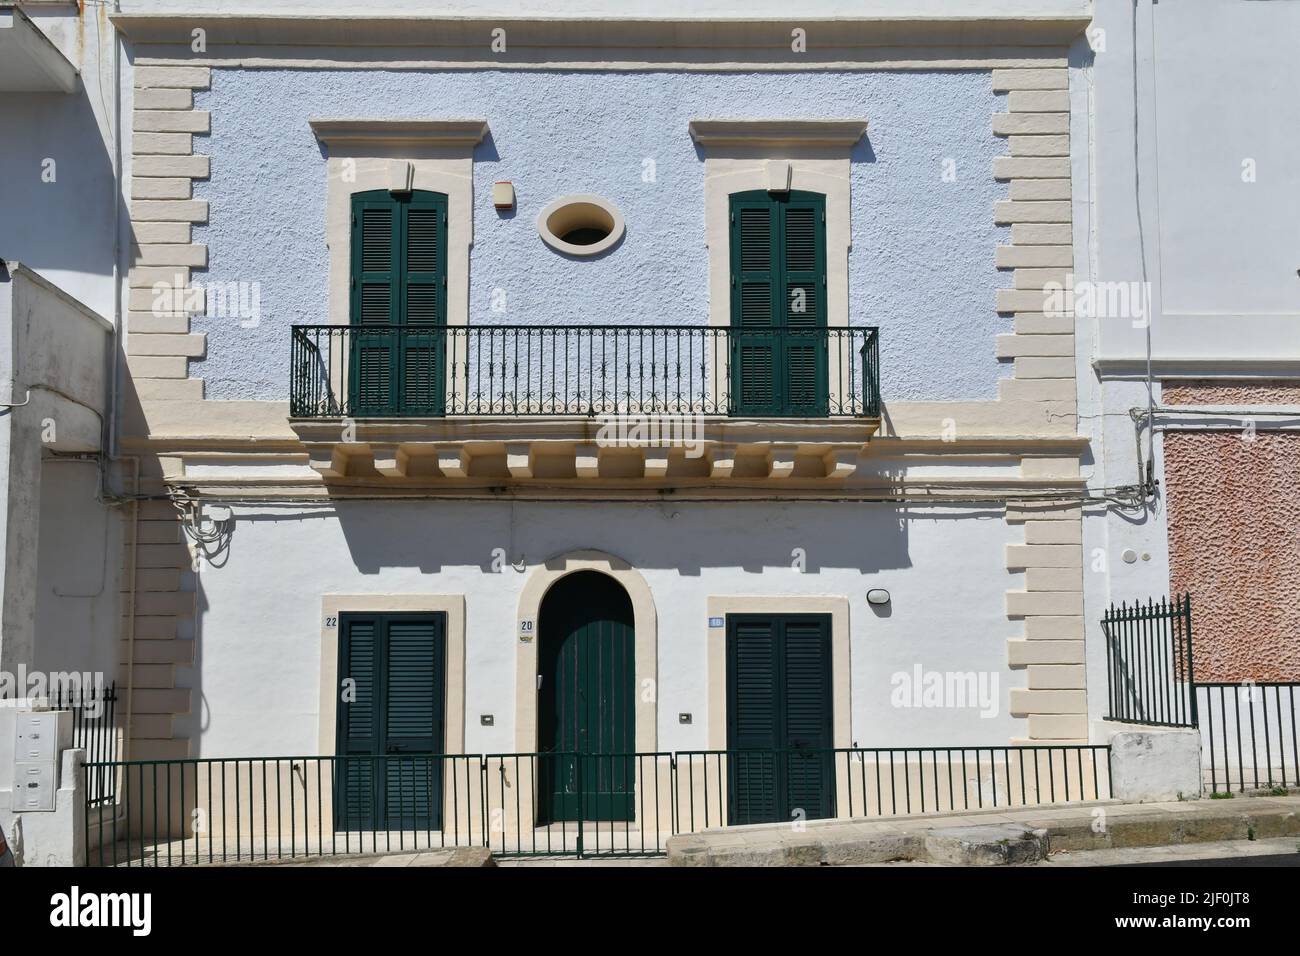 La fachada de una casa en Santa Cesarea Terme, un pueblo de Apulia en la provincia de Lecce en Italia. Foto de stock